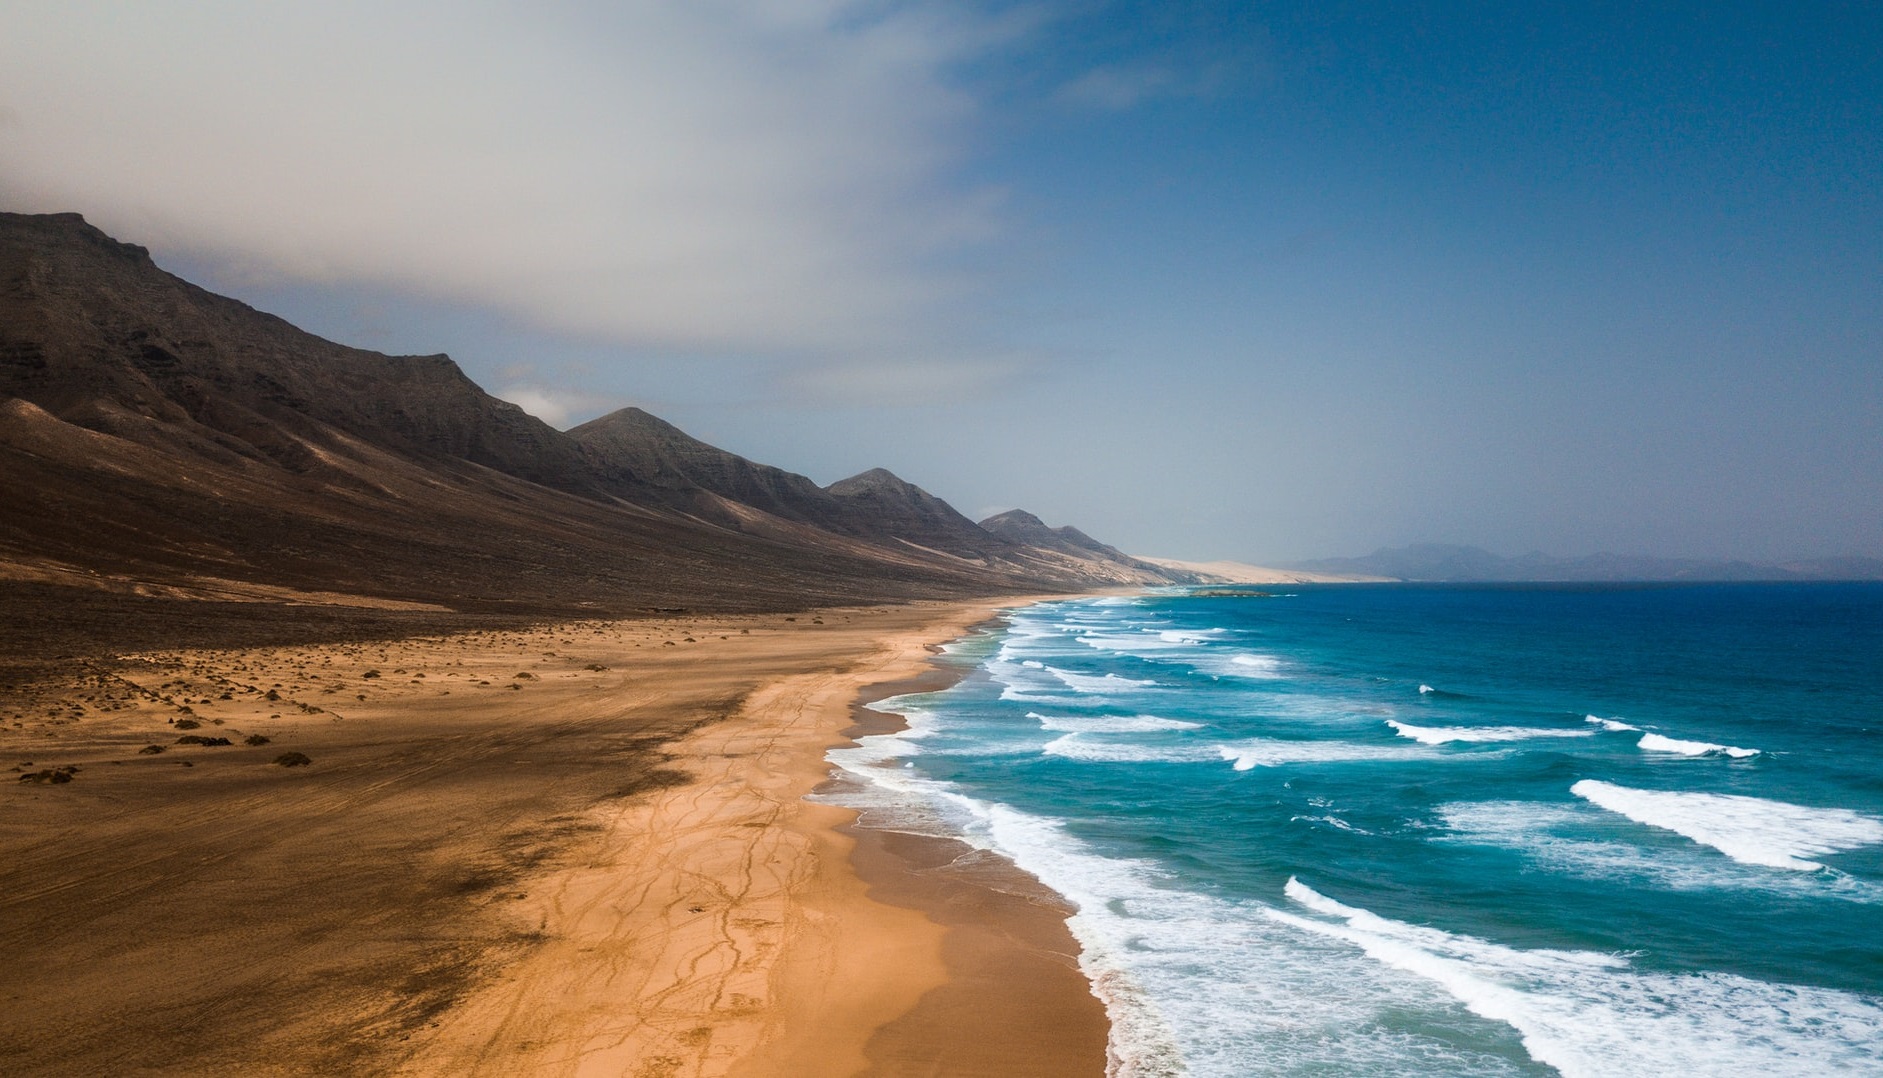 Découvrez nos séjours de luxe en vente privée - Fuerteventura. VeryChic vous propose des voyages jusqu’à -70% dans les plus beaux hôtels du monde - Fuerteventura